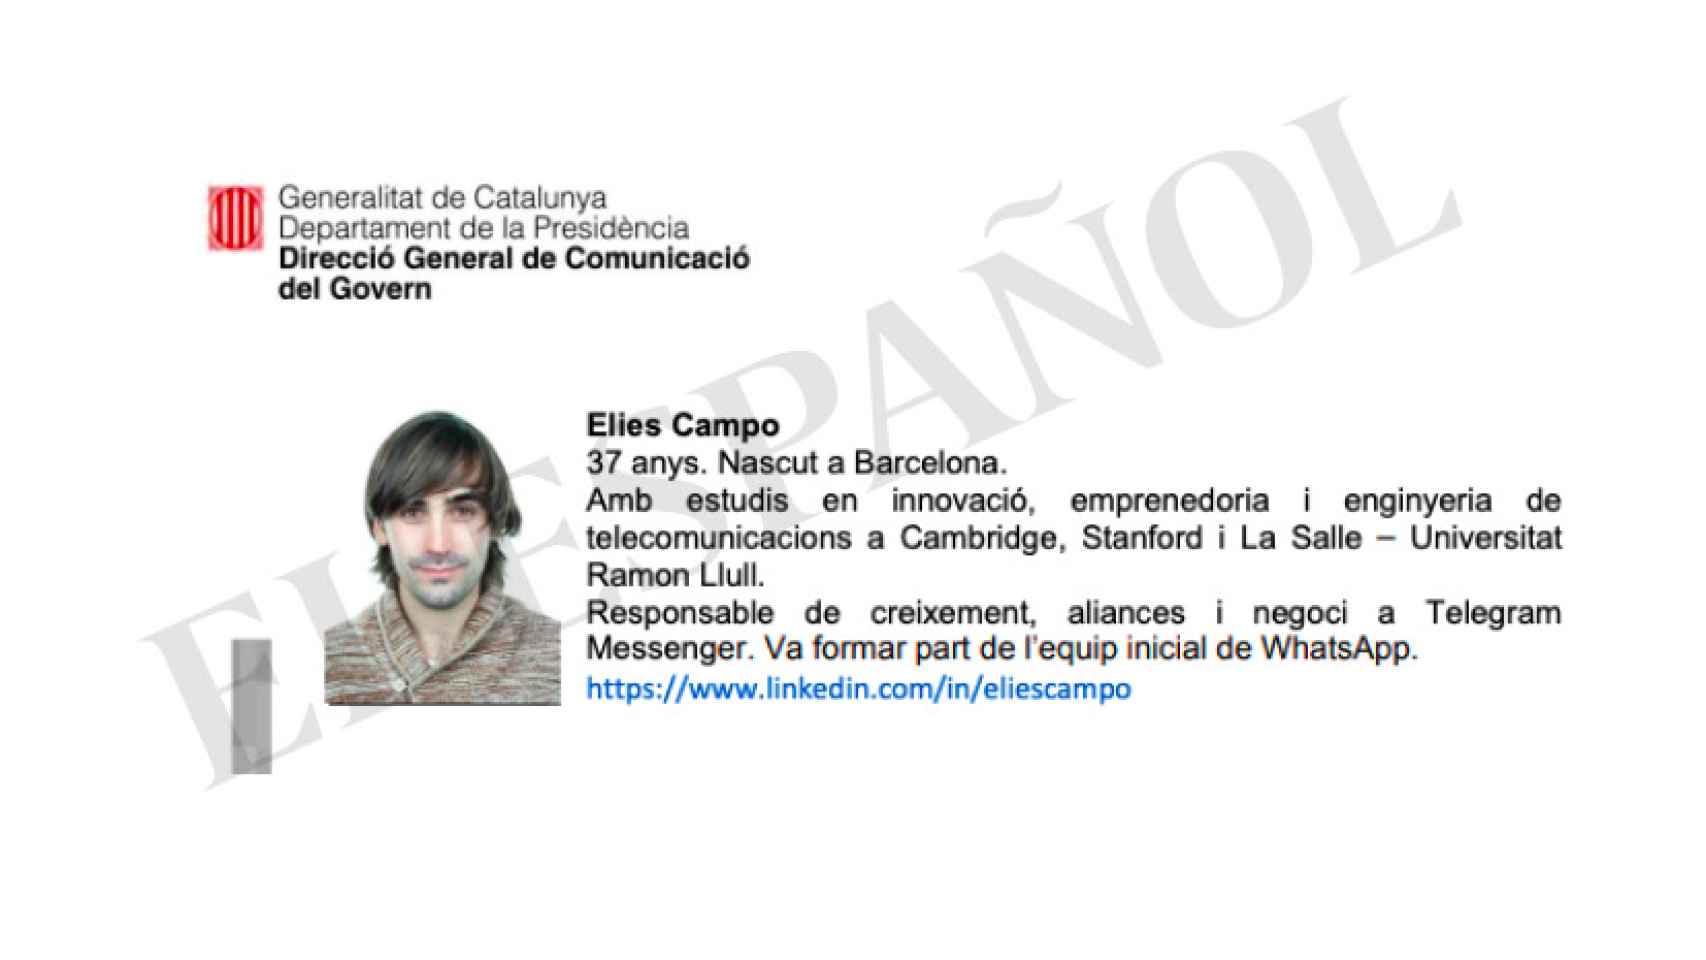 El informático Elies Campo, en el documento de la Generalitat con el que le presentaban como colaborador.